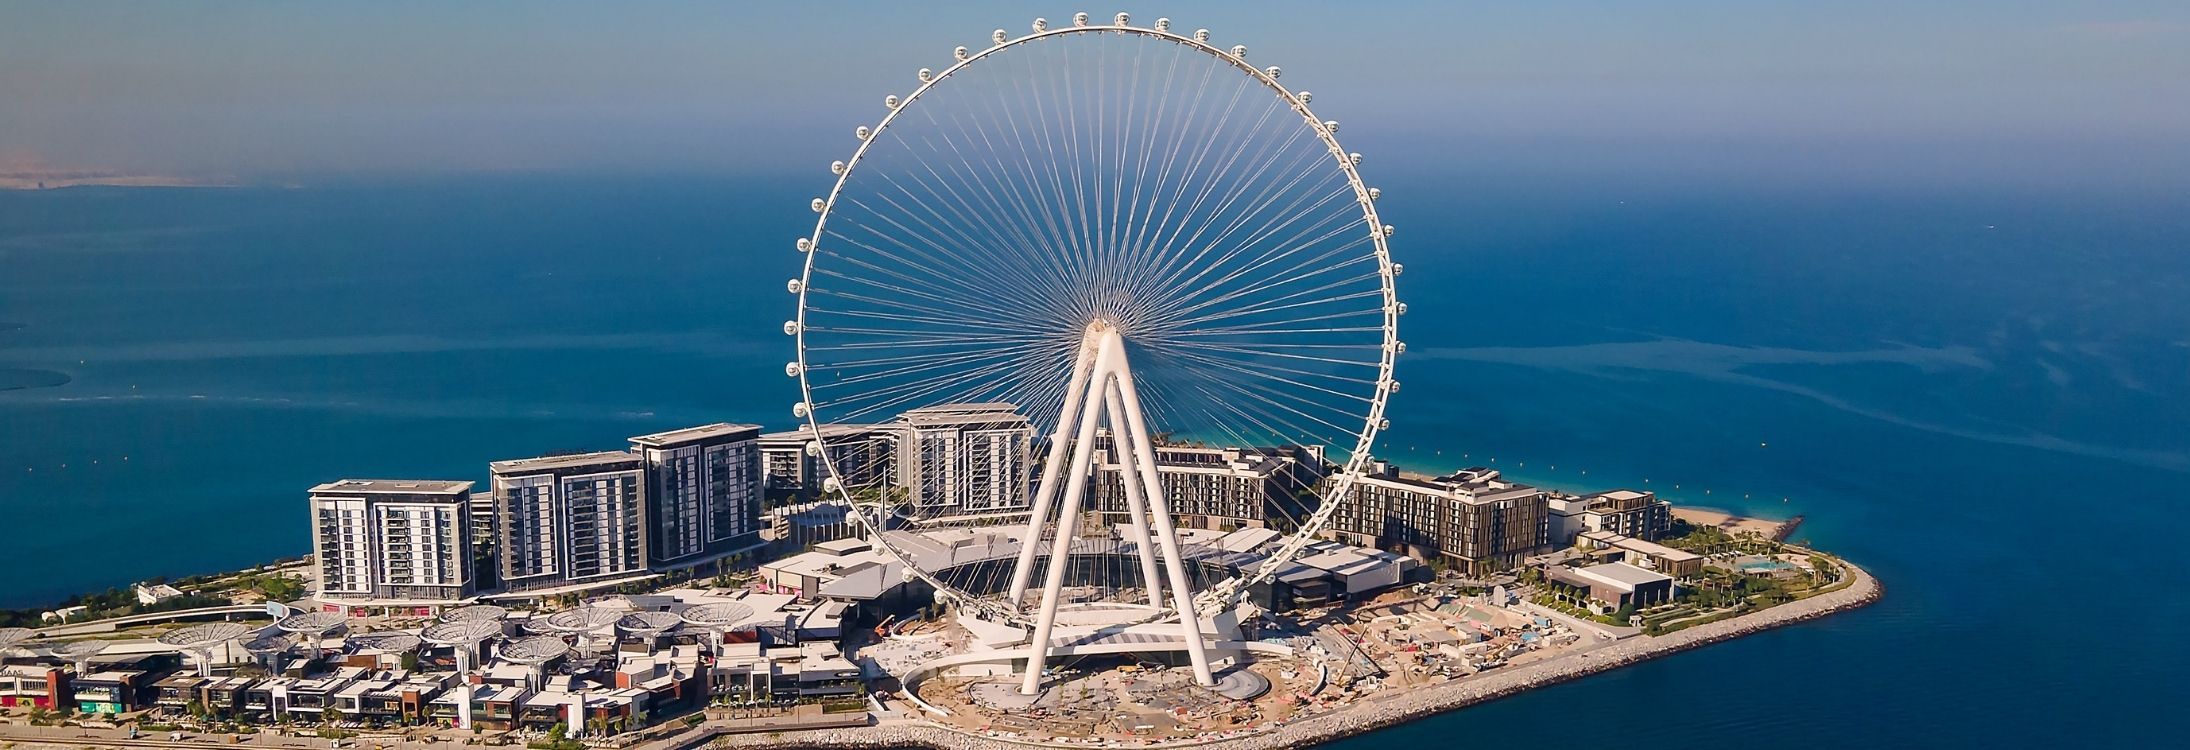 World's largest ferris wheel opens in Dubai